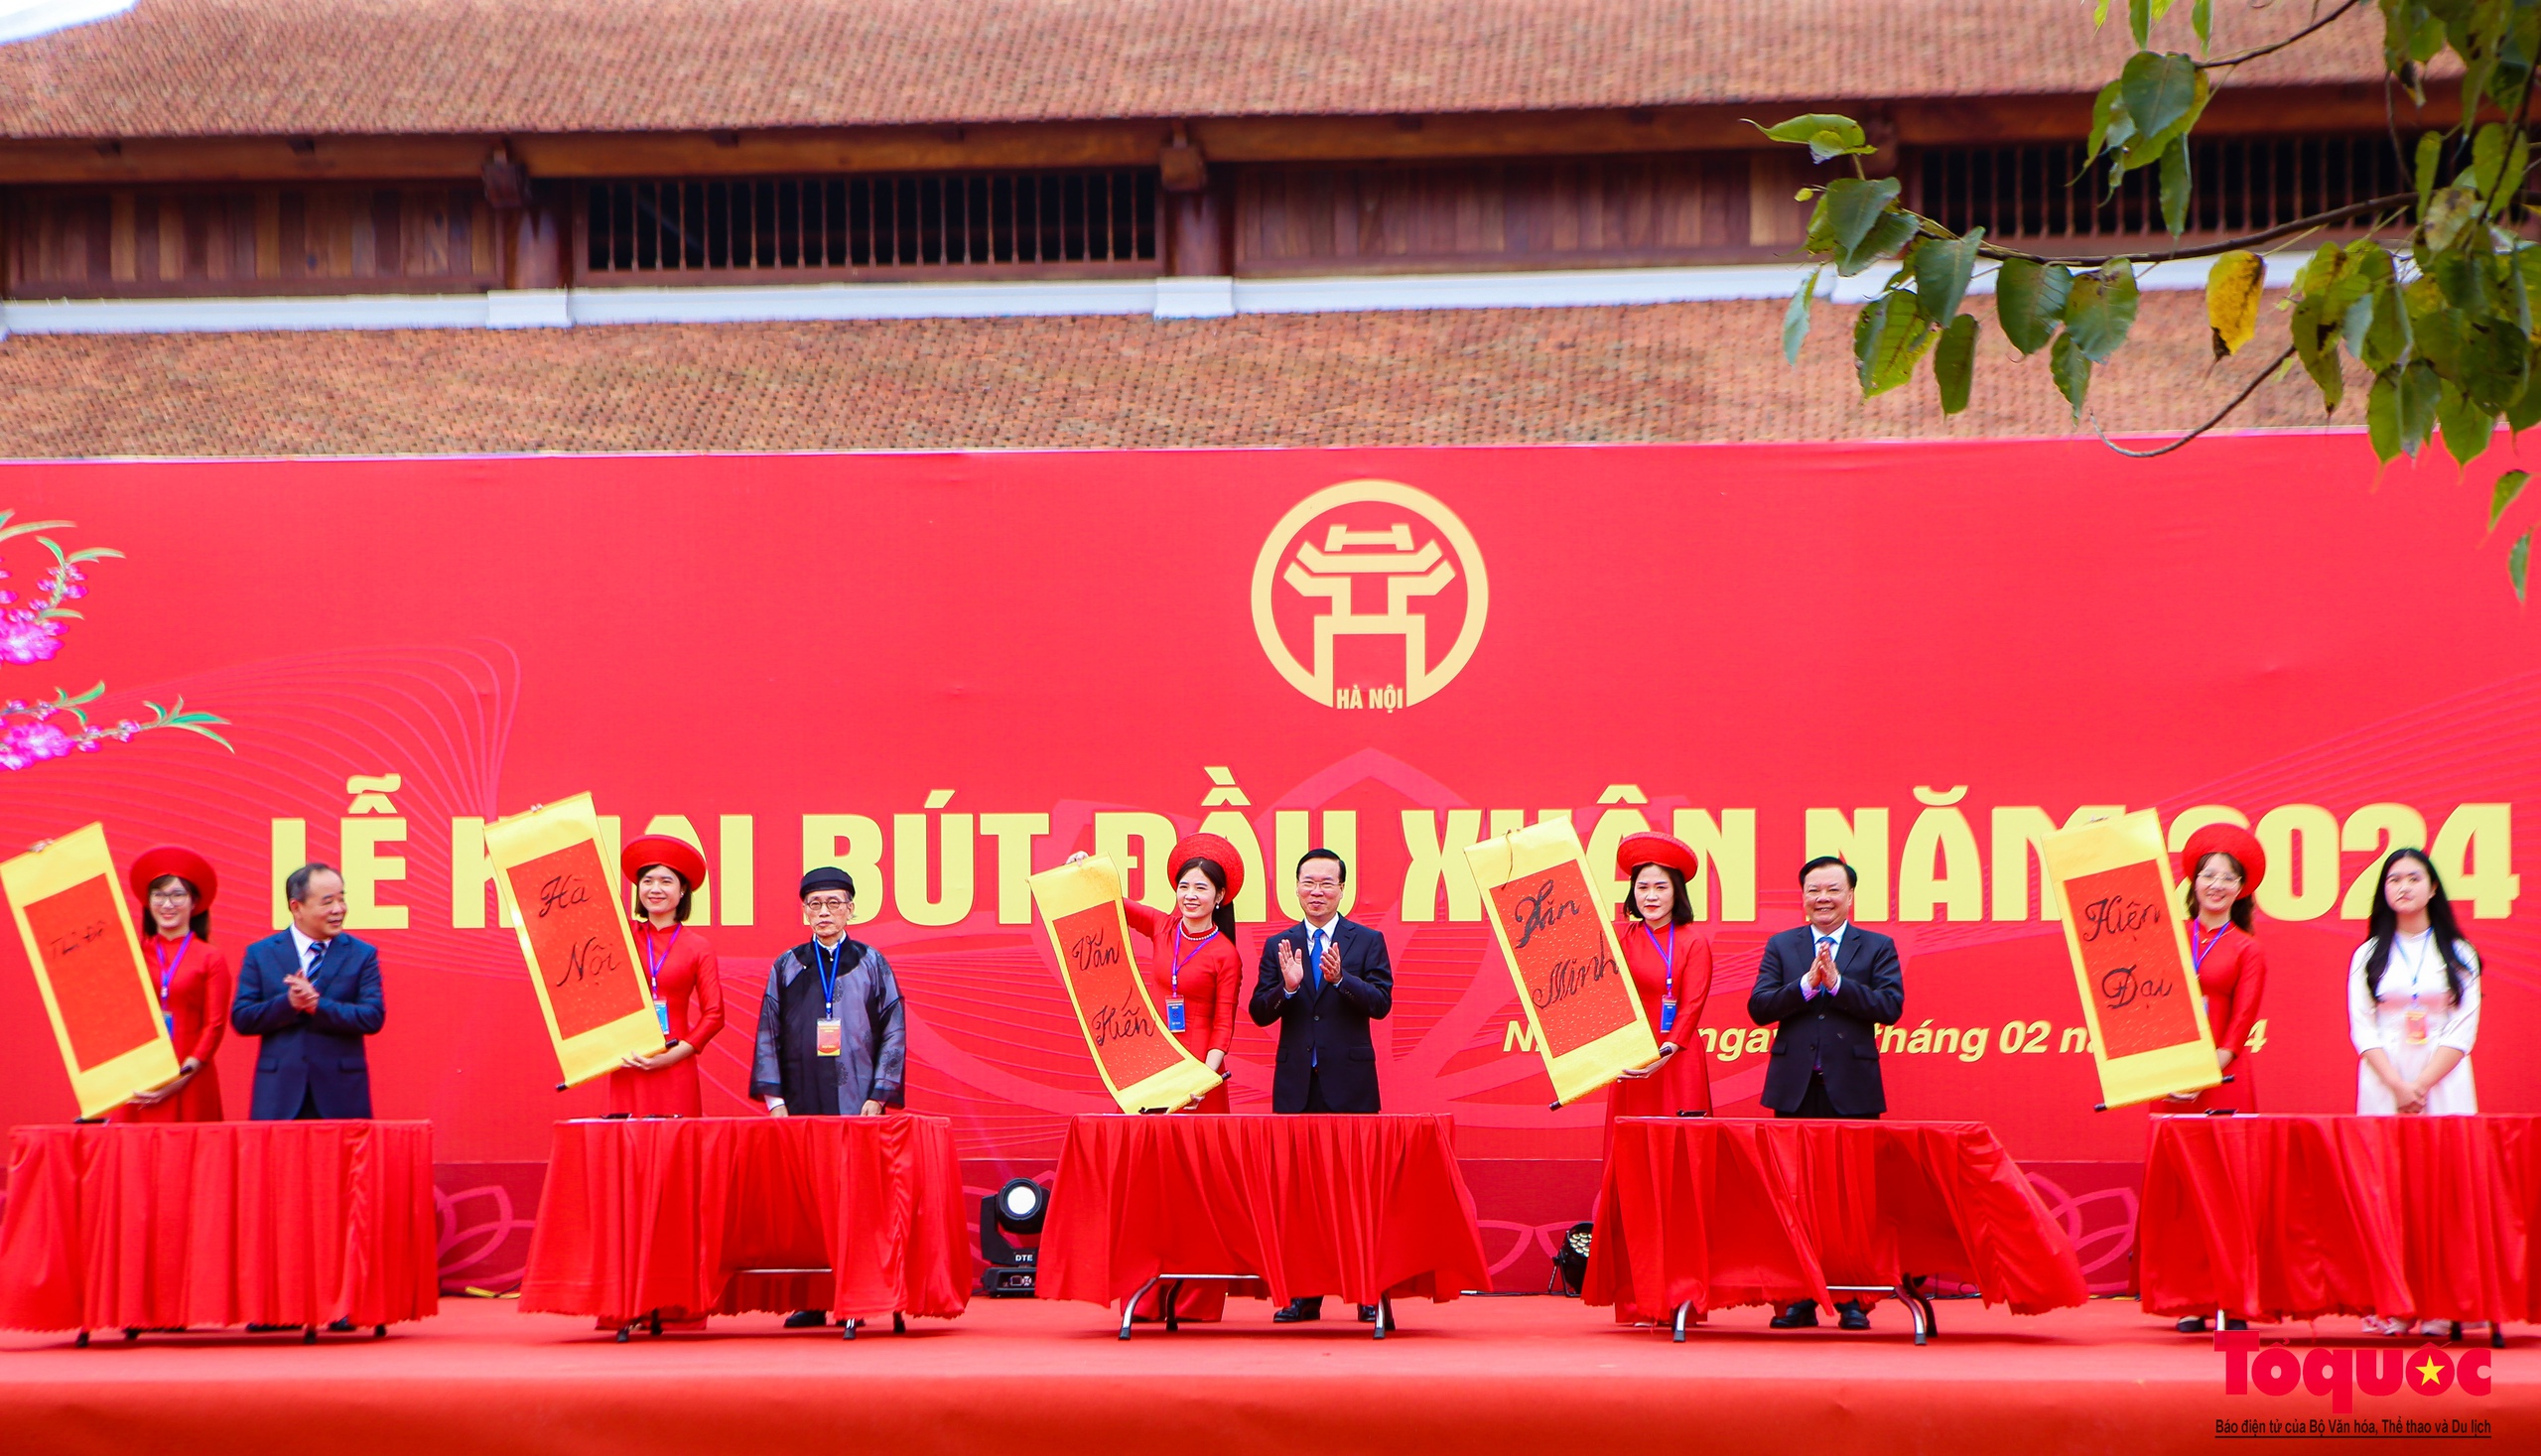 Chủ tịch nước Võ Văn Thưởng khai bút đầu năm tại Hà Nội - Ảnh 5.